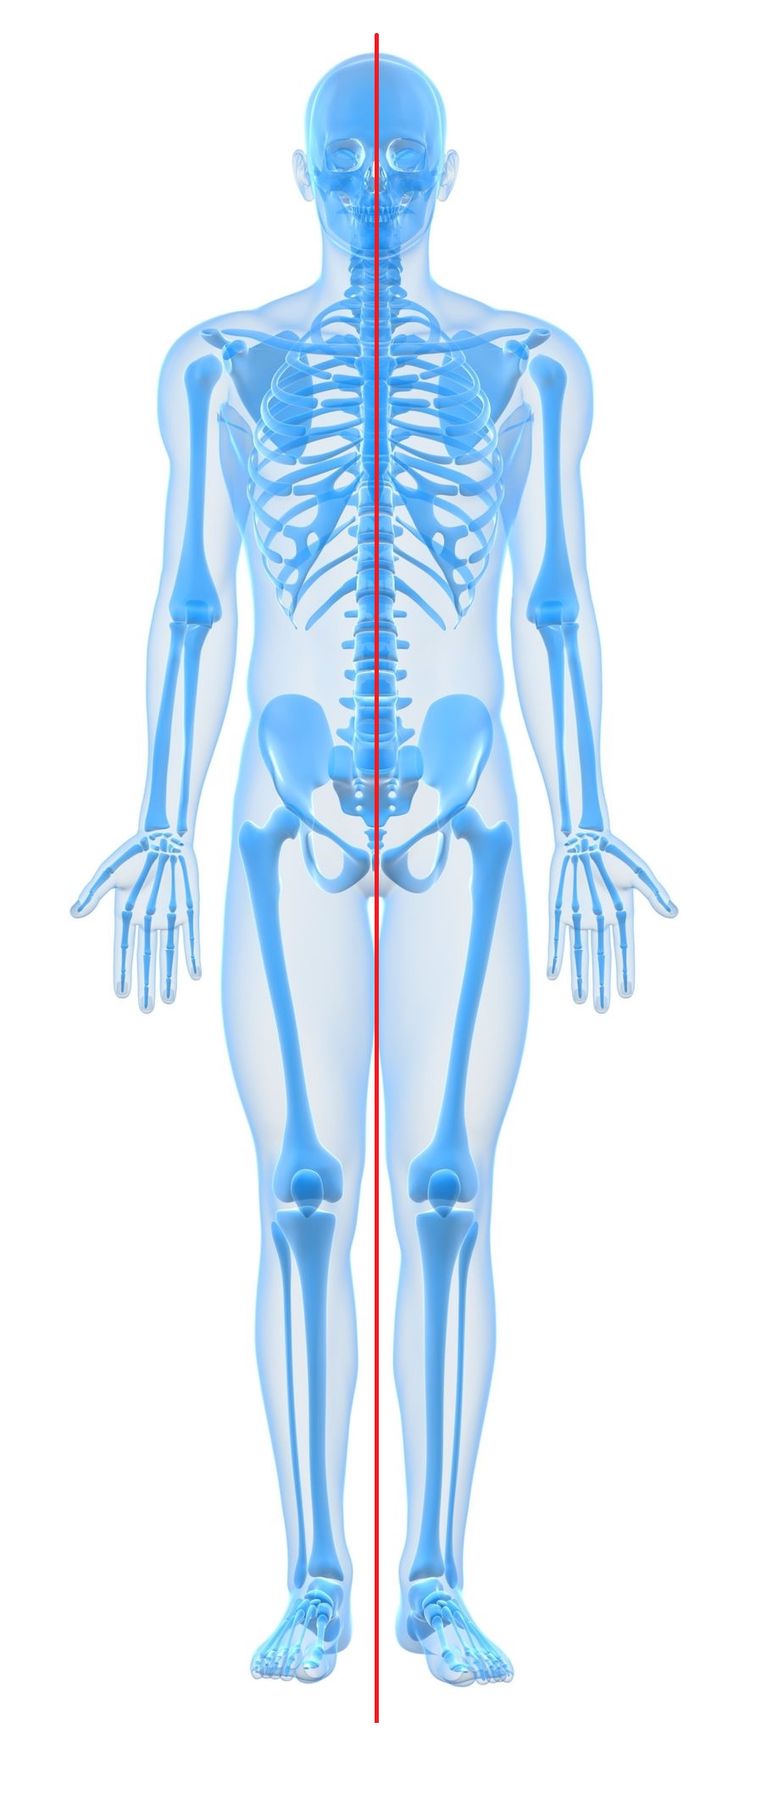 Hình 3: Minh họa sự đối xứng của cơ thể qua đường giữa